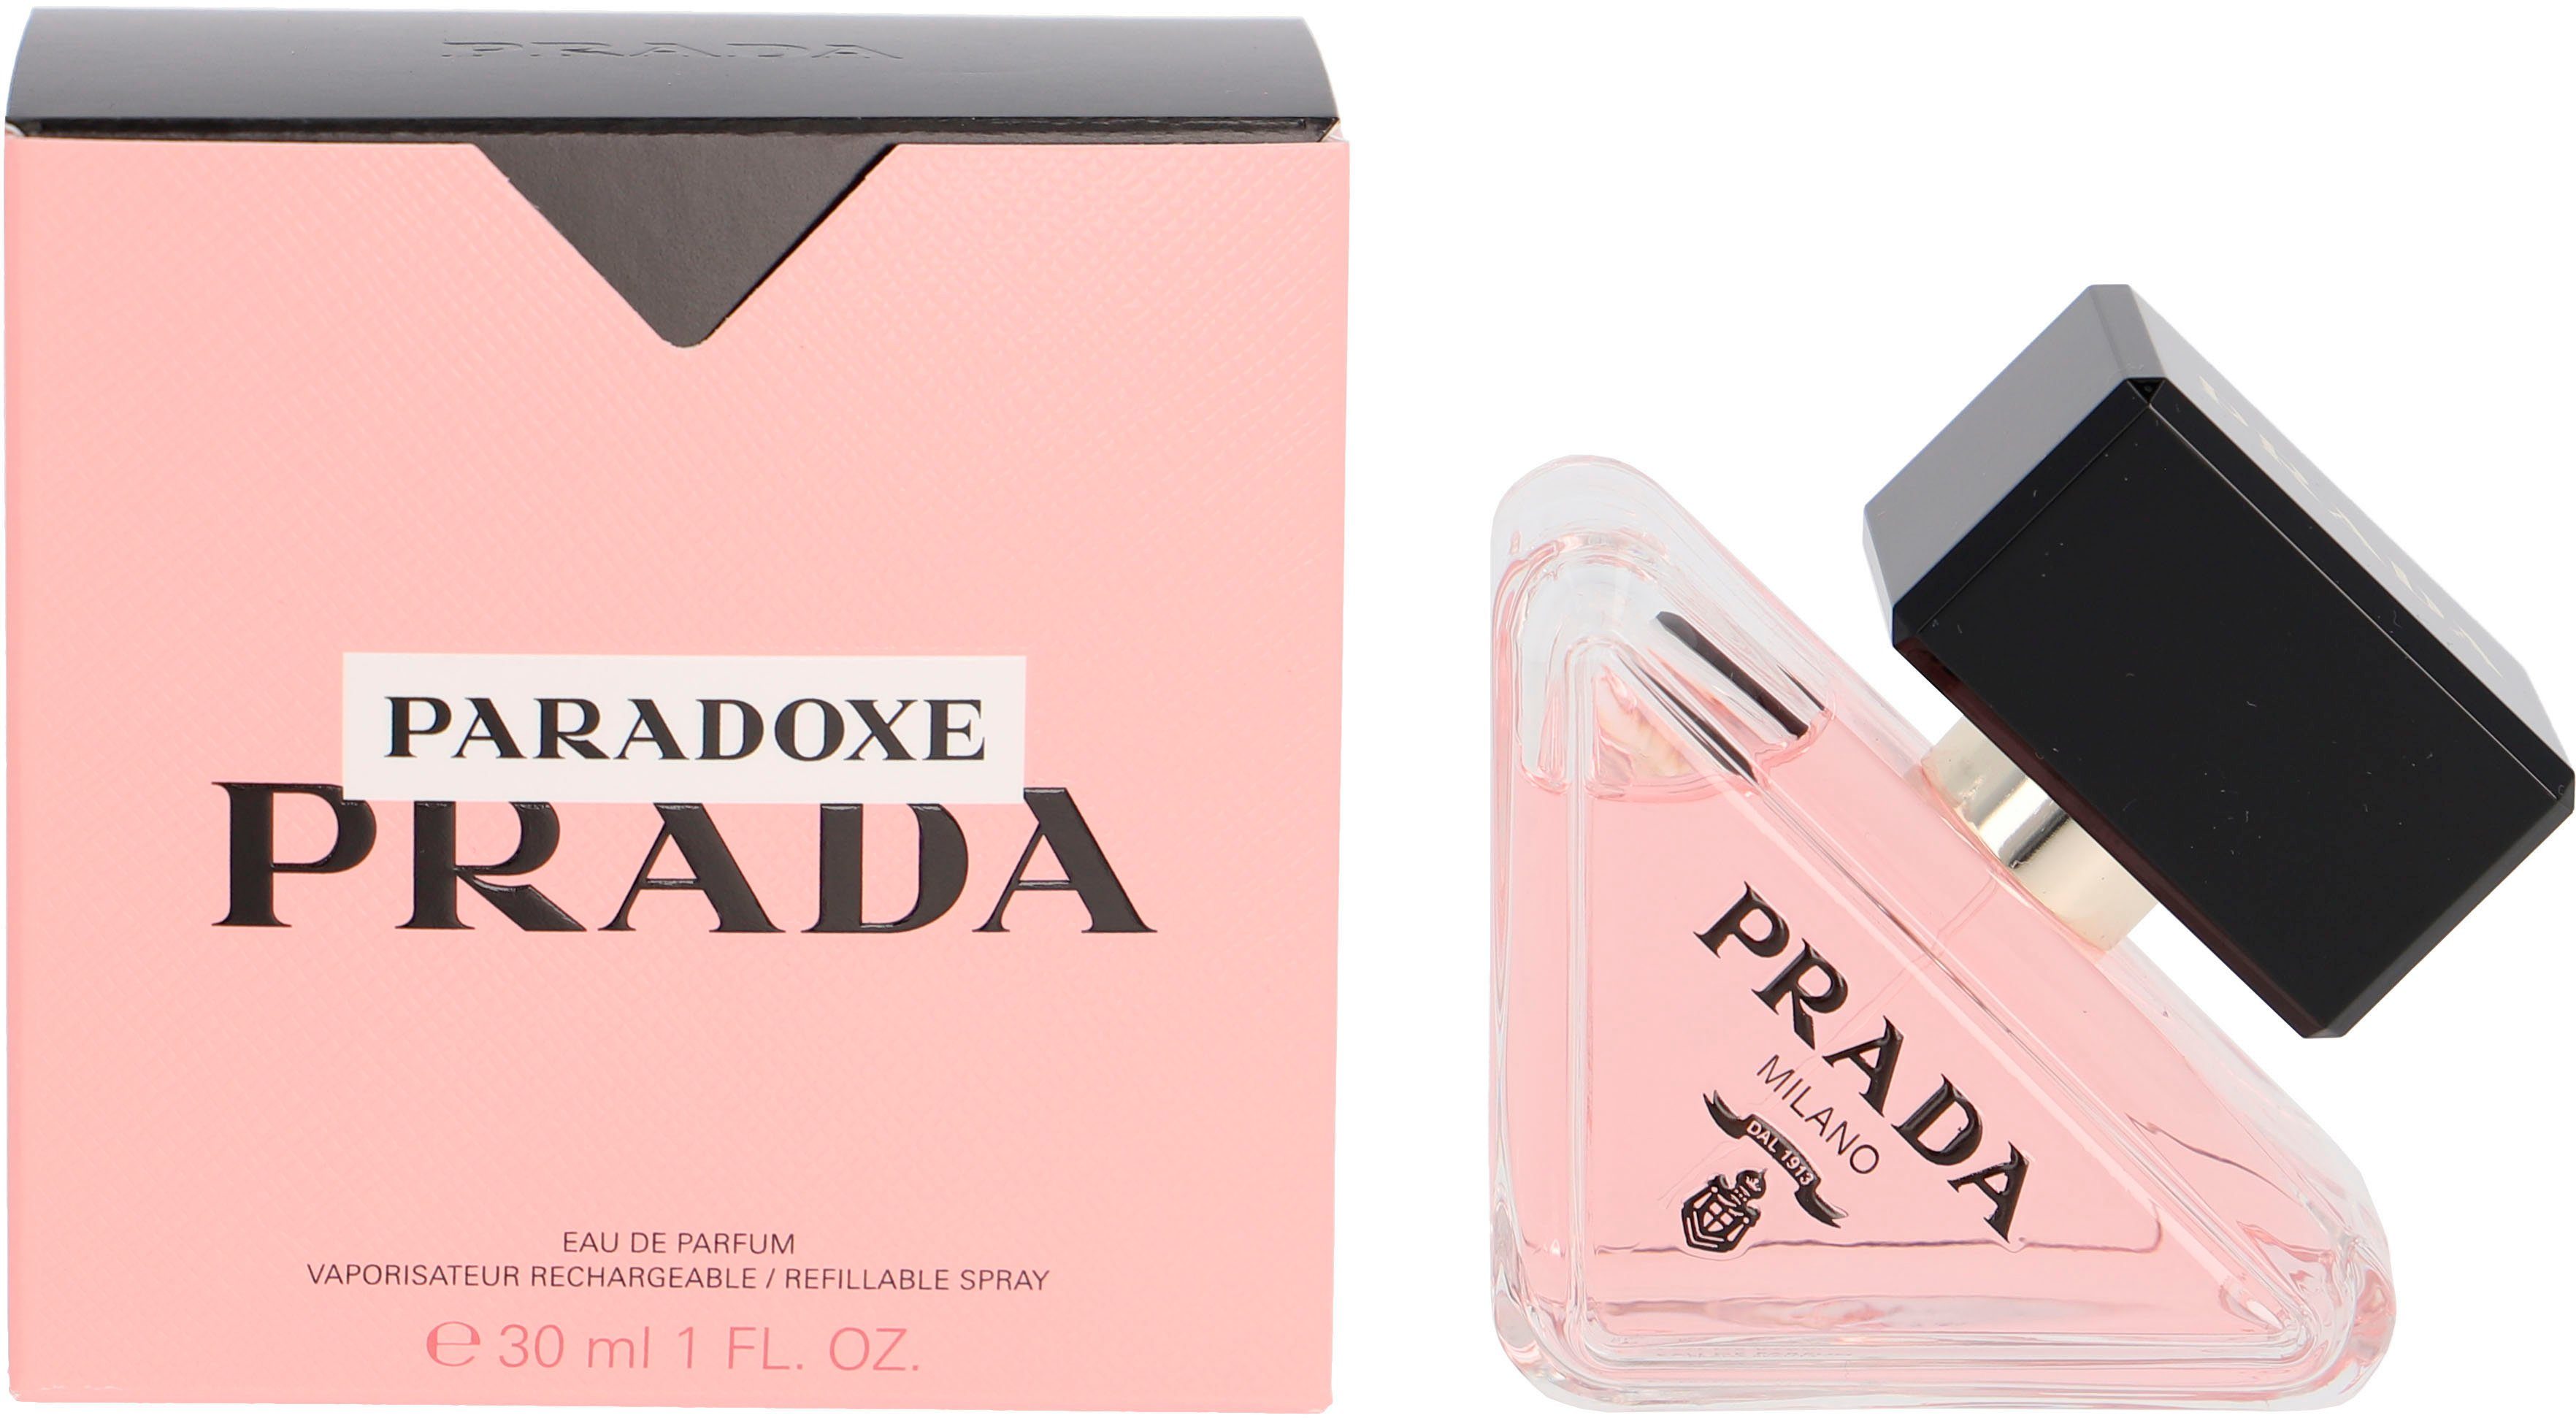 Paradoxe de Eau PRADA Parfum